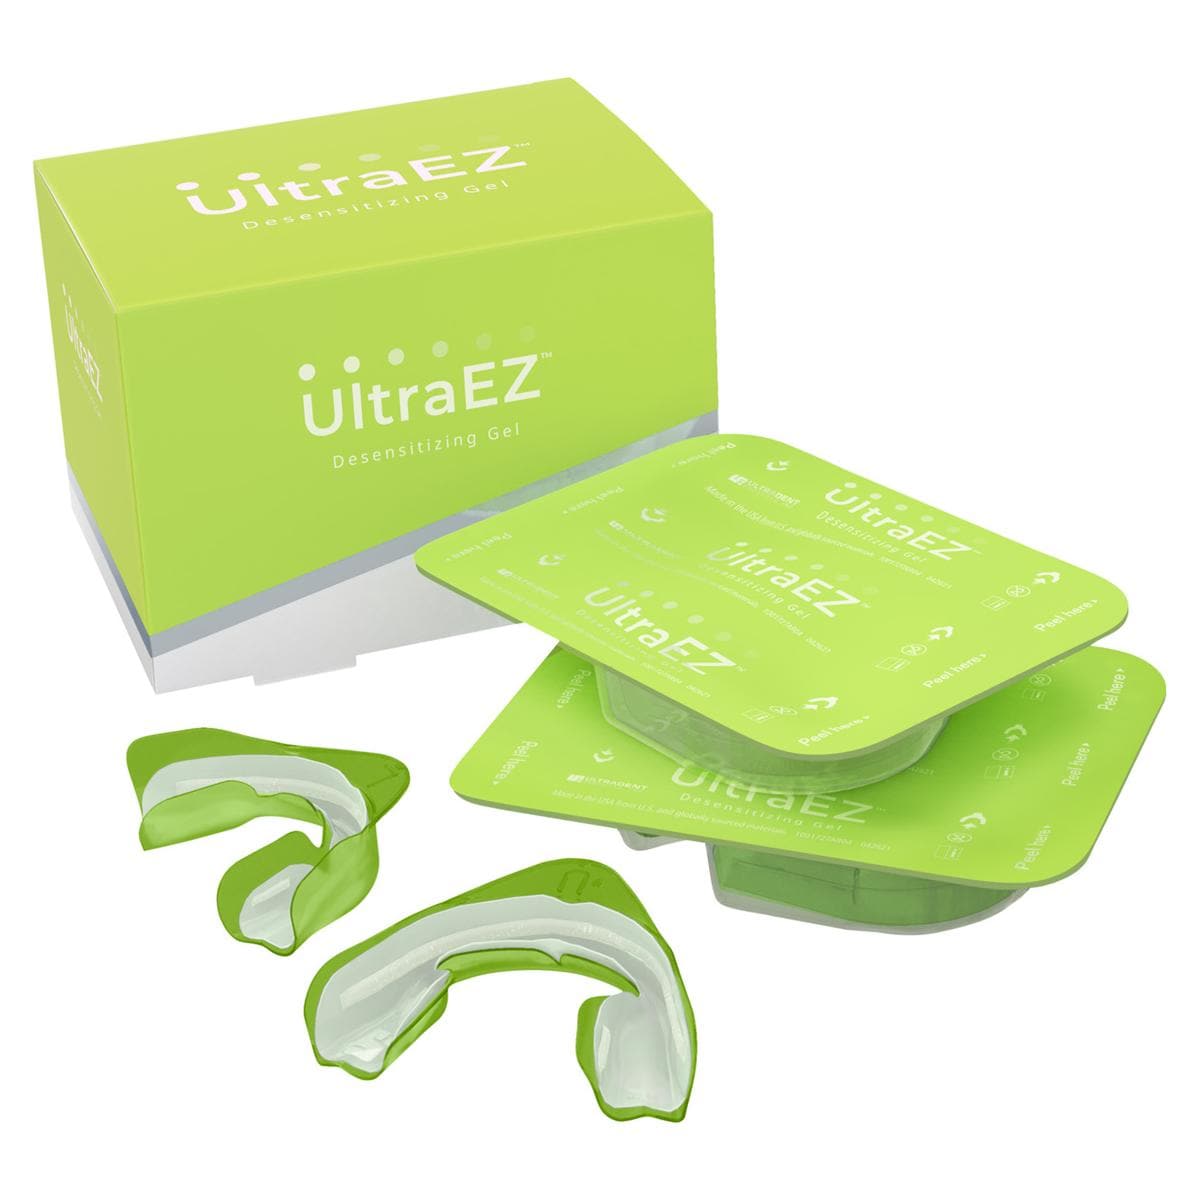 UltraEZ - UP 5743 Mini Kit, 4 blisters